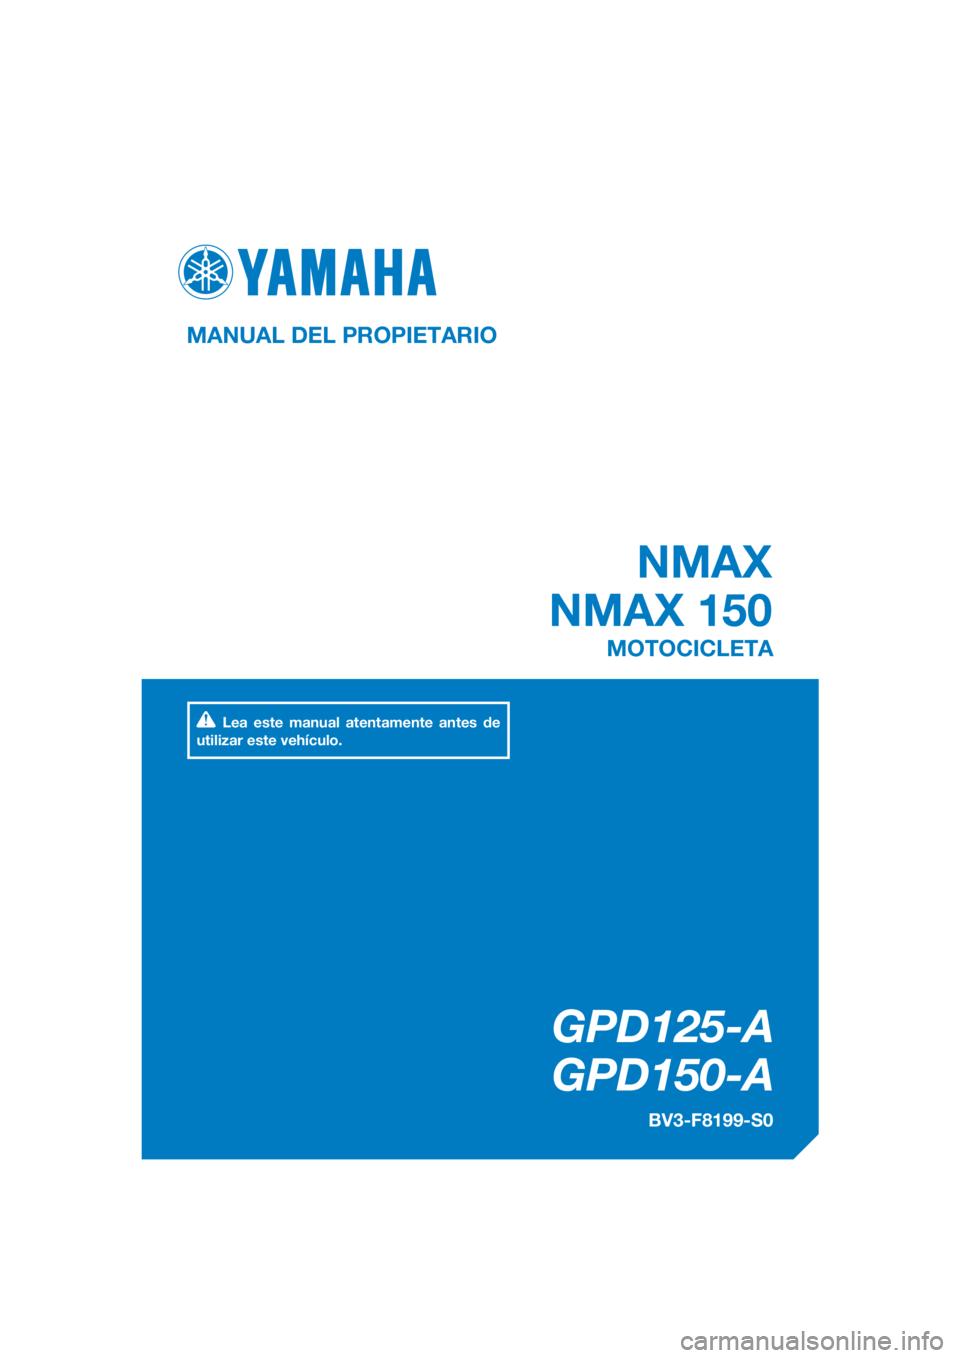 YAMAHA NMAX 150 2016  Manuale de Empleo (in Spanish) DIC183
NMAX
NMAX 150
GPD125-A
GPD150-A
MANUAL DEL PROPIETARIO
BV3-F8199-S0
MOTOCICLETA
Lea este manual atentamente antes de 
utilizar este vehículo.
[Spanish  (S)] 